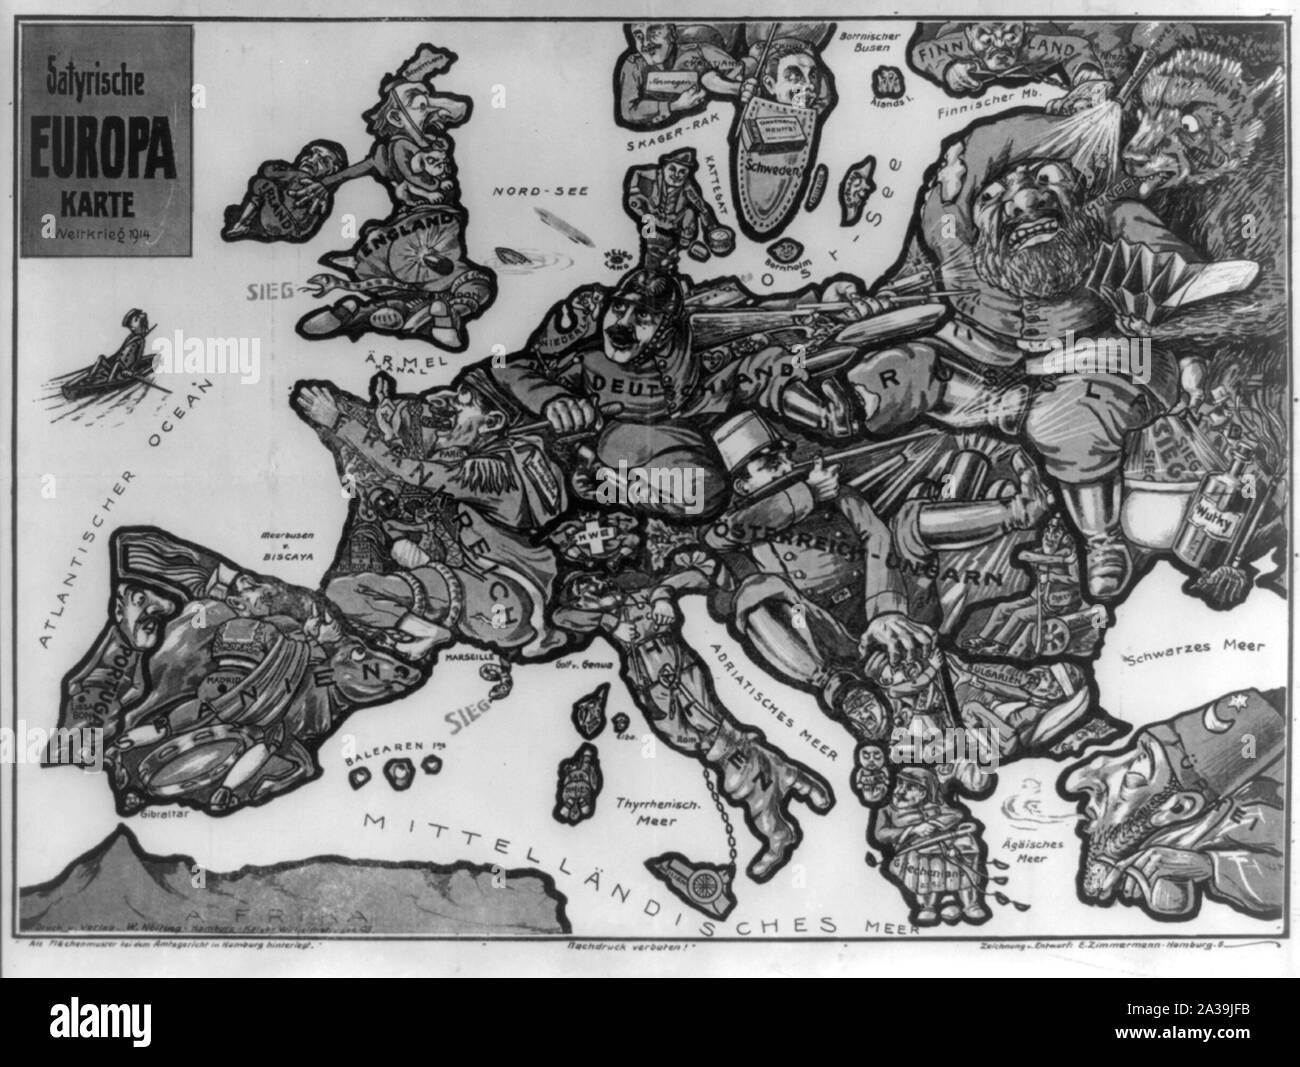 Satyrische Europa Karte Weltkrieg 1914 / Zeichnung v. Entwurf, E. ZIMMERMANN, Amburgo, 6. Foto Stock